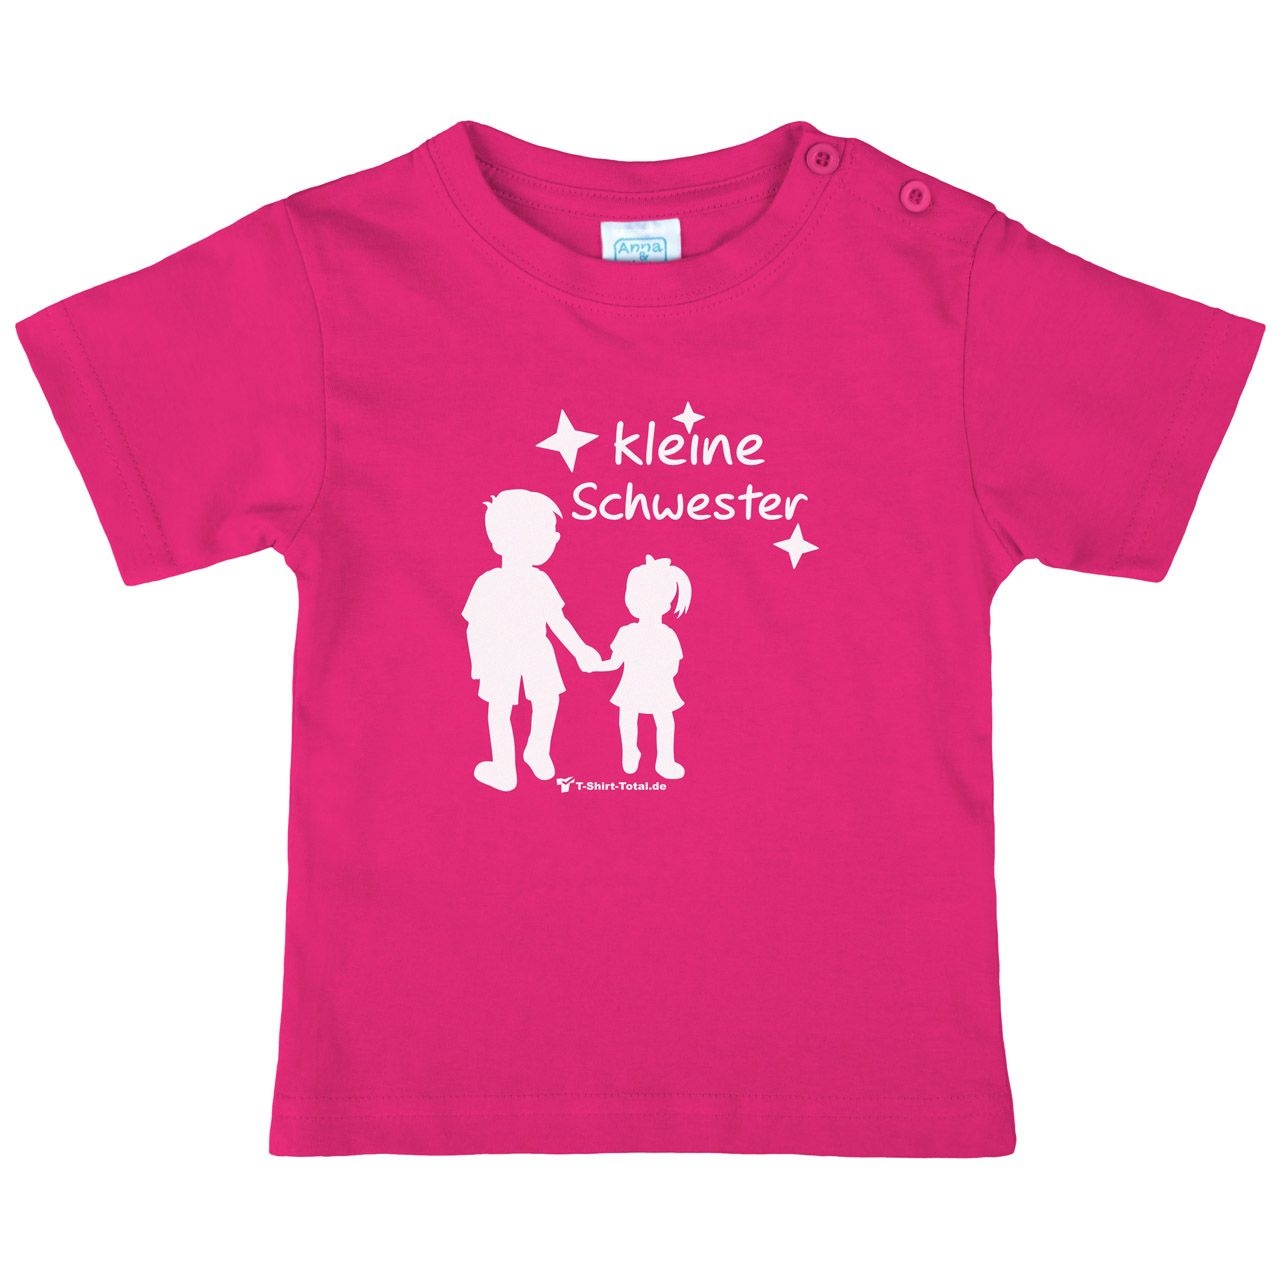 Kleine Schwester JM Kinder T-Shirt pink 68 / 74